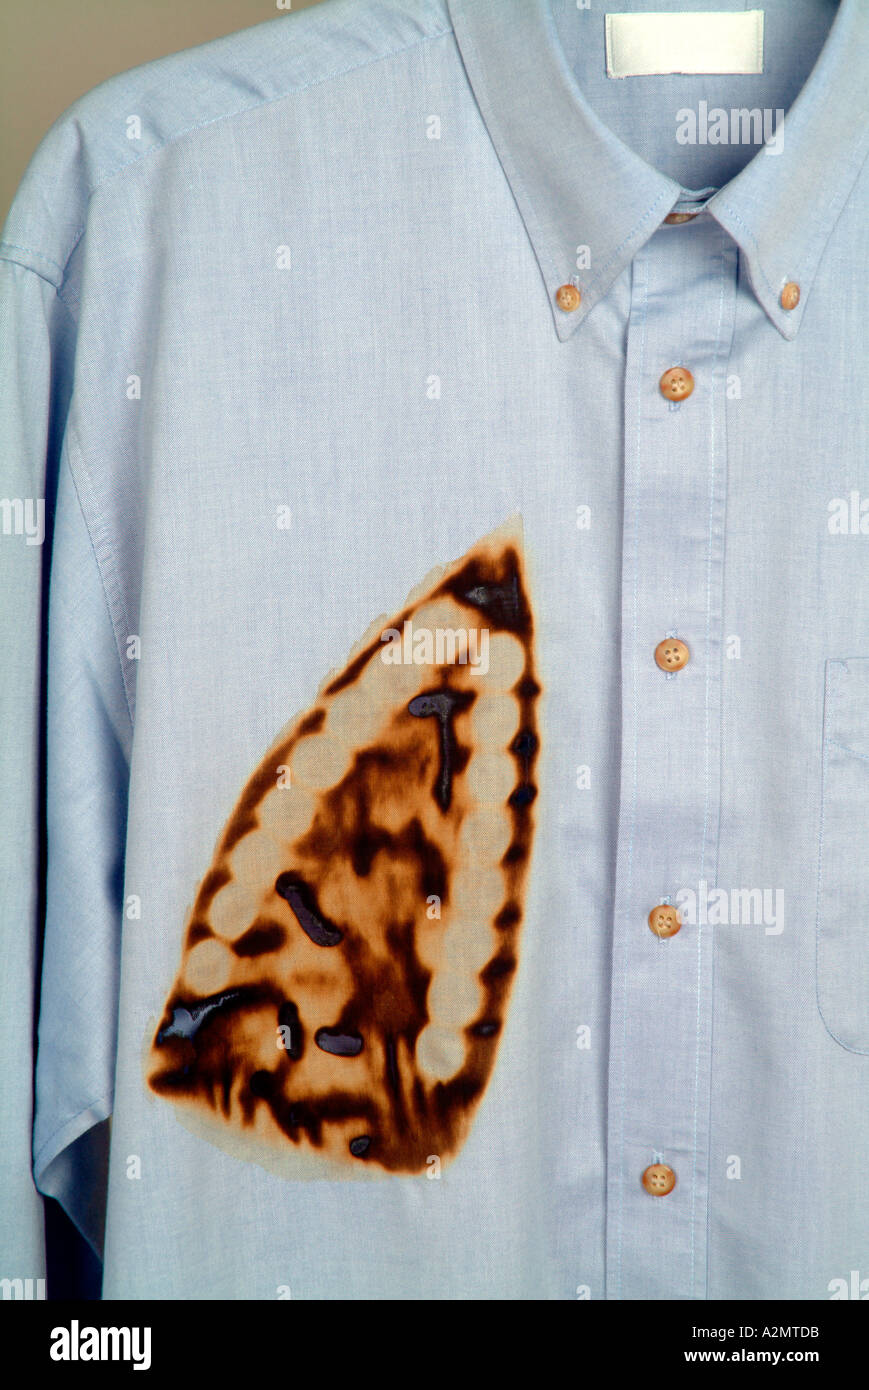 Iron burn shirt Banque de photographies et d'images à haute résolution -  Alamy